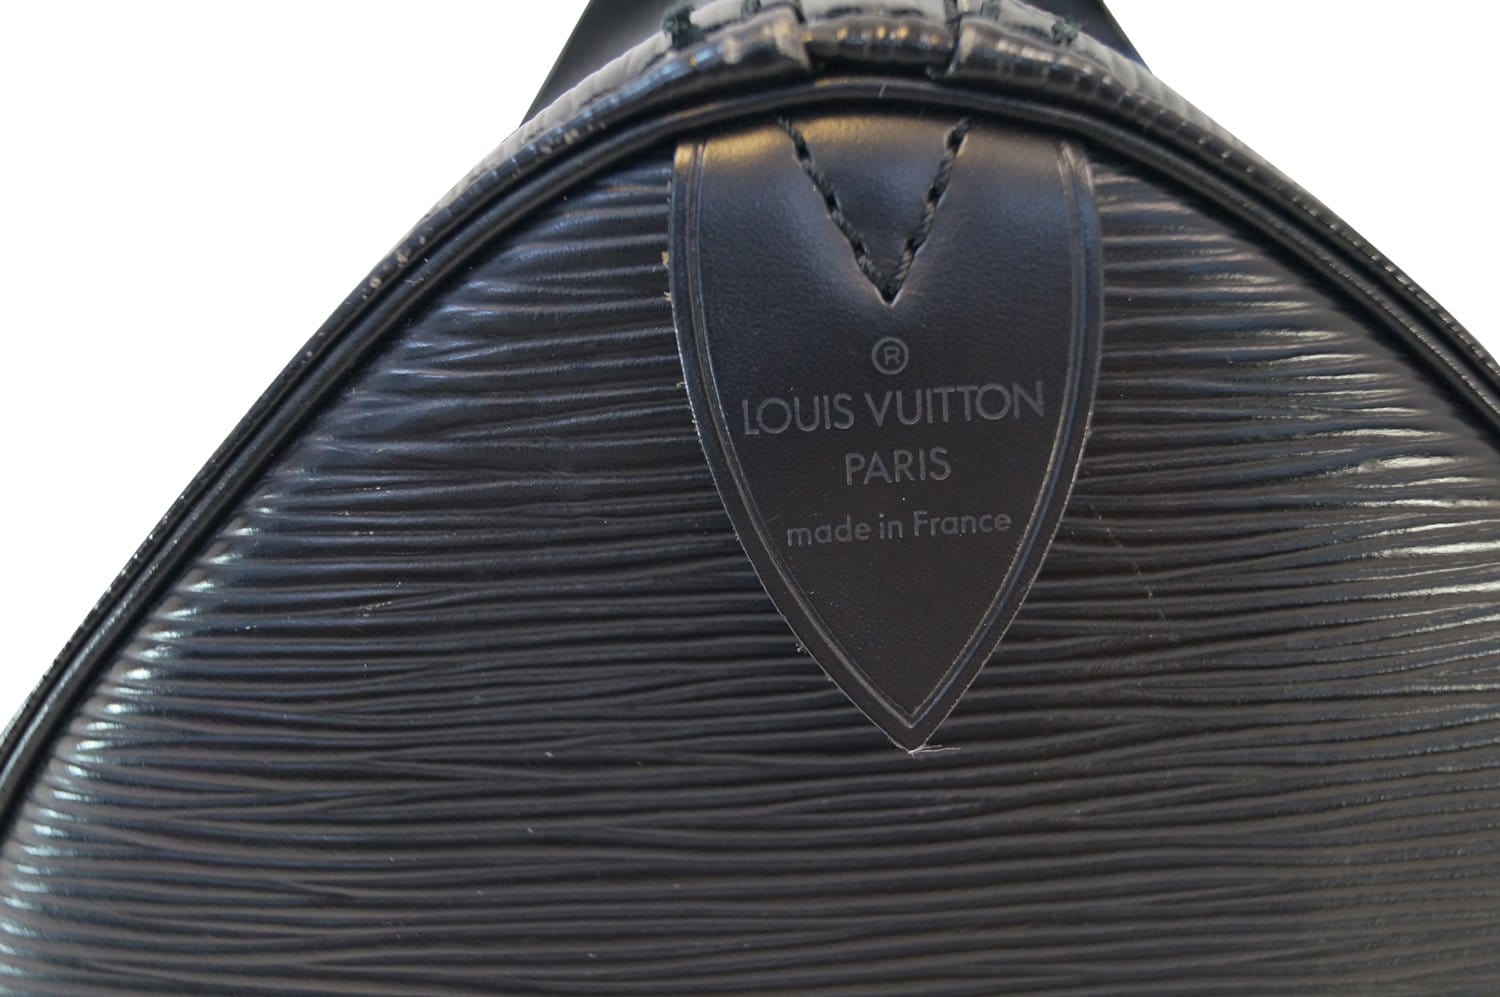 Louis Vuitton Speedy 35 – extremely dark handles . . .